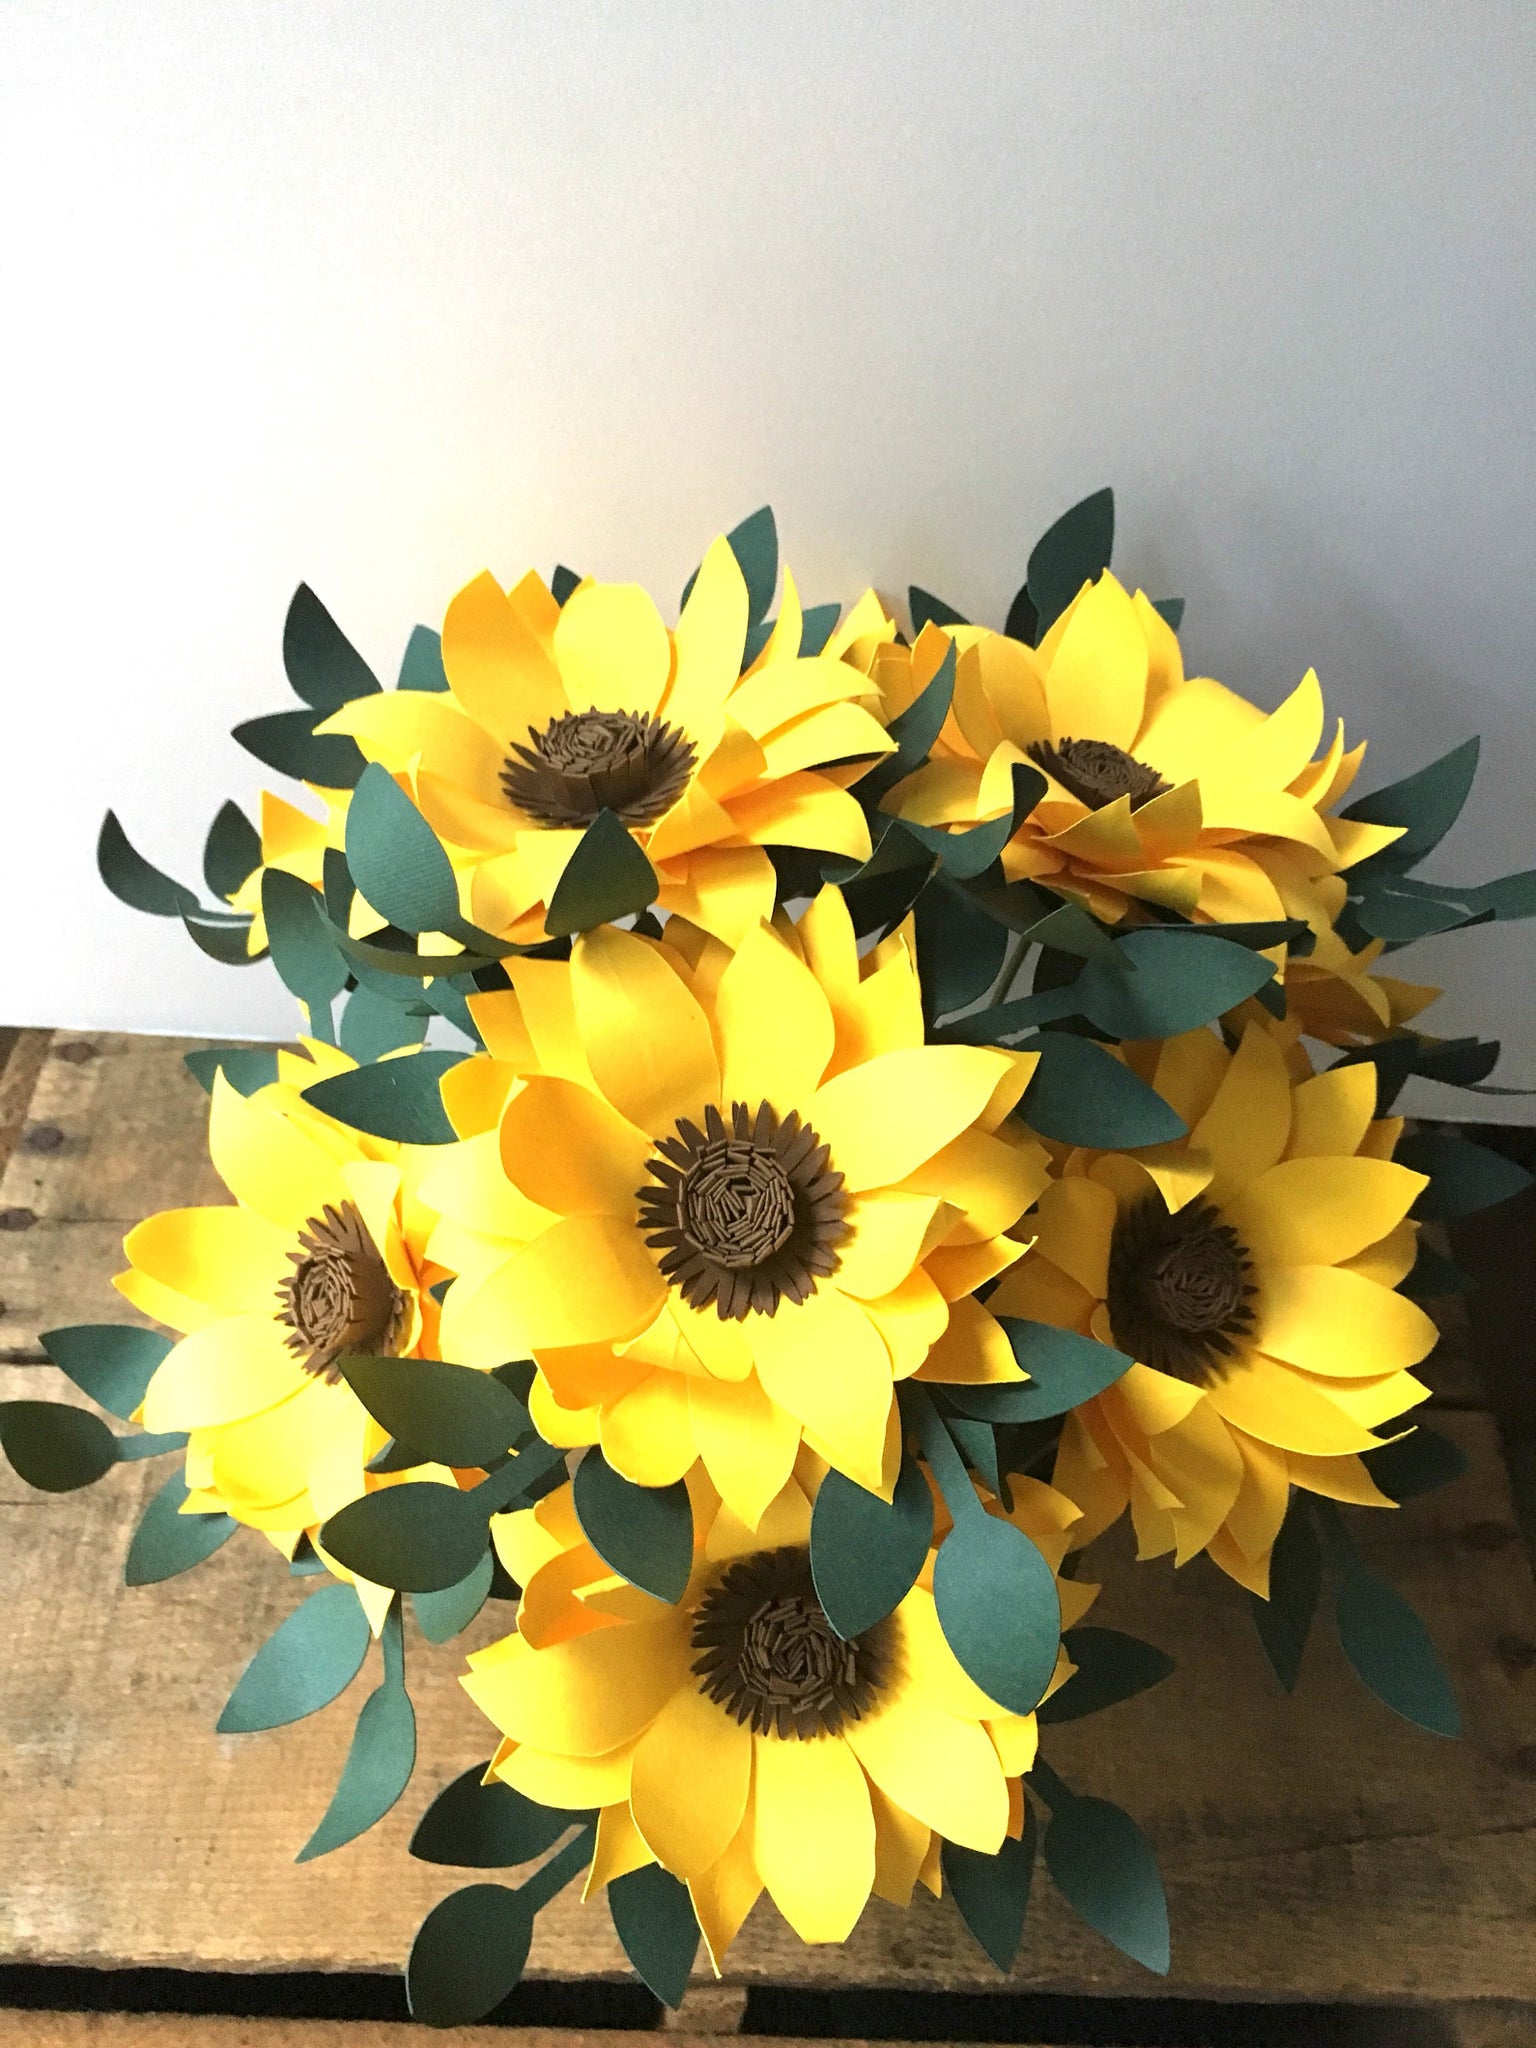 Paper Sunflowers - Small Bouquet - Medium Bouquet - Large Bouquet